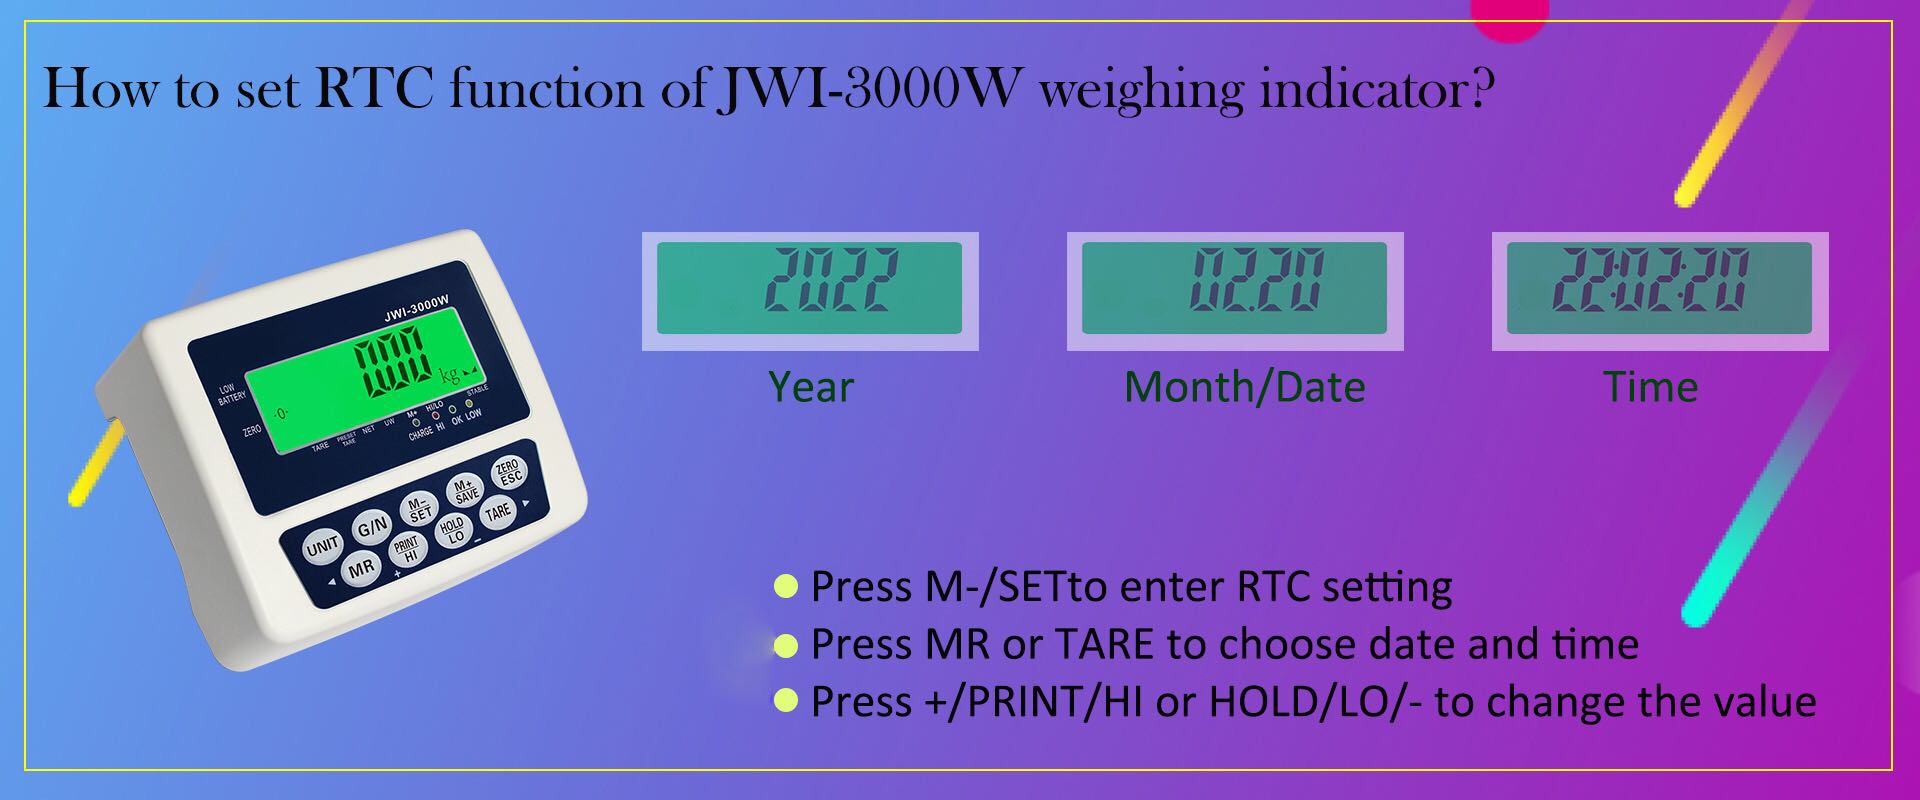 come impostare la funzione RTC dell'indicatore di pesatura industriale JWI-3000W